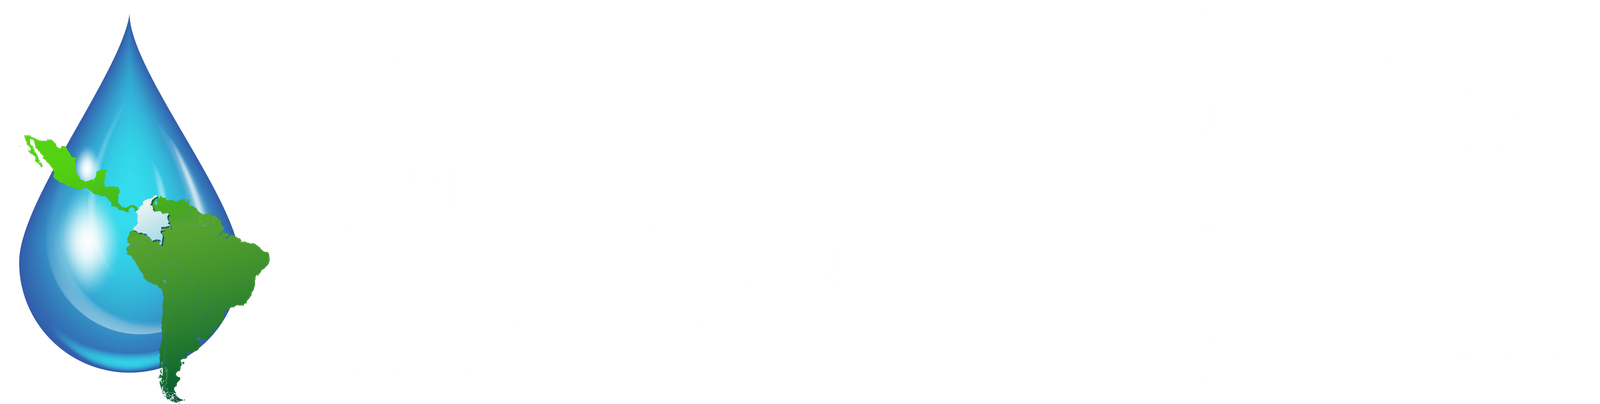 XXXI Congreso Latinoamericano de Hidraulica